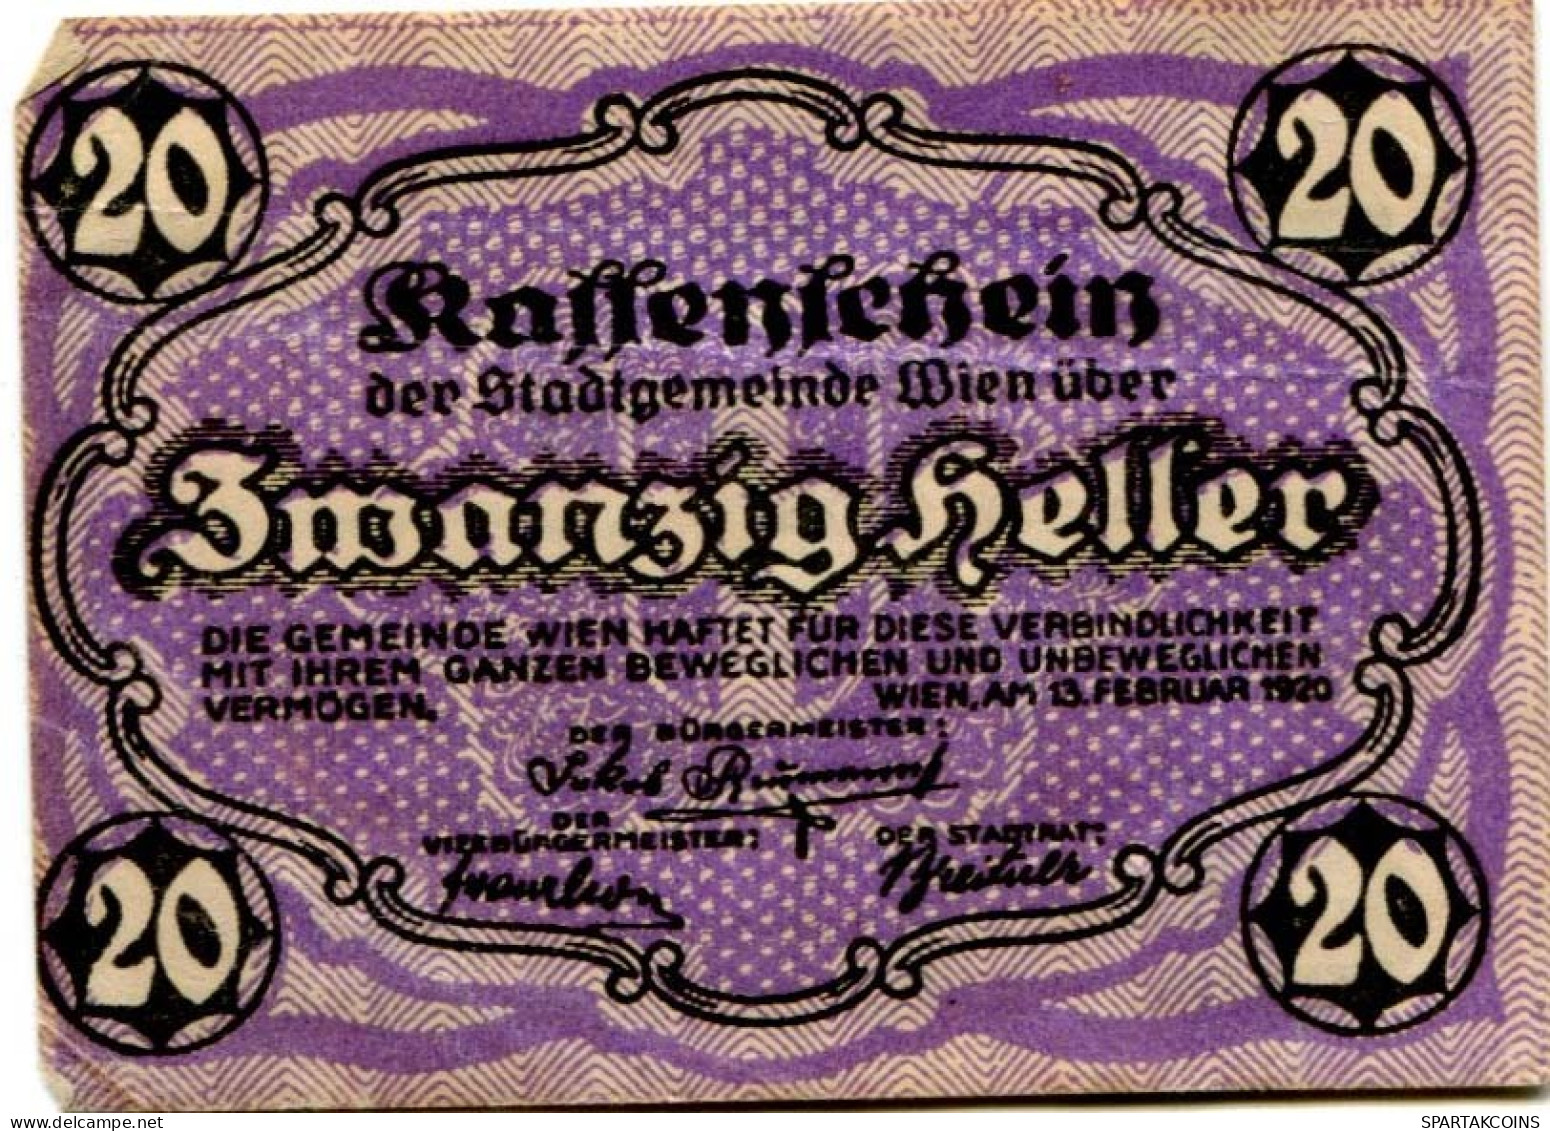 20 HELLER 1920 Stadt Wien Österreich Notgeld Papiergeld Banknote #PL568 - Lokale Ausgaben